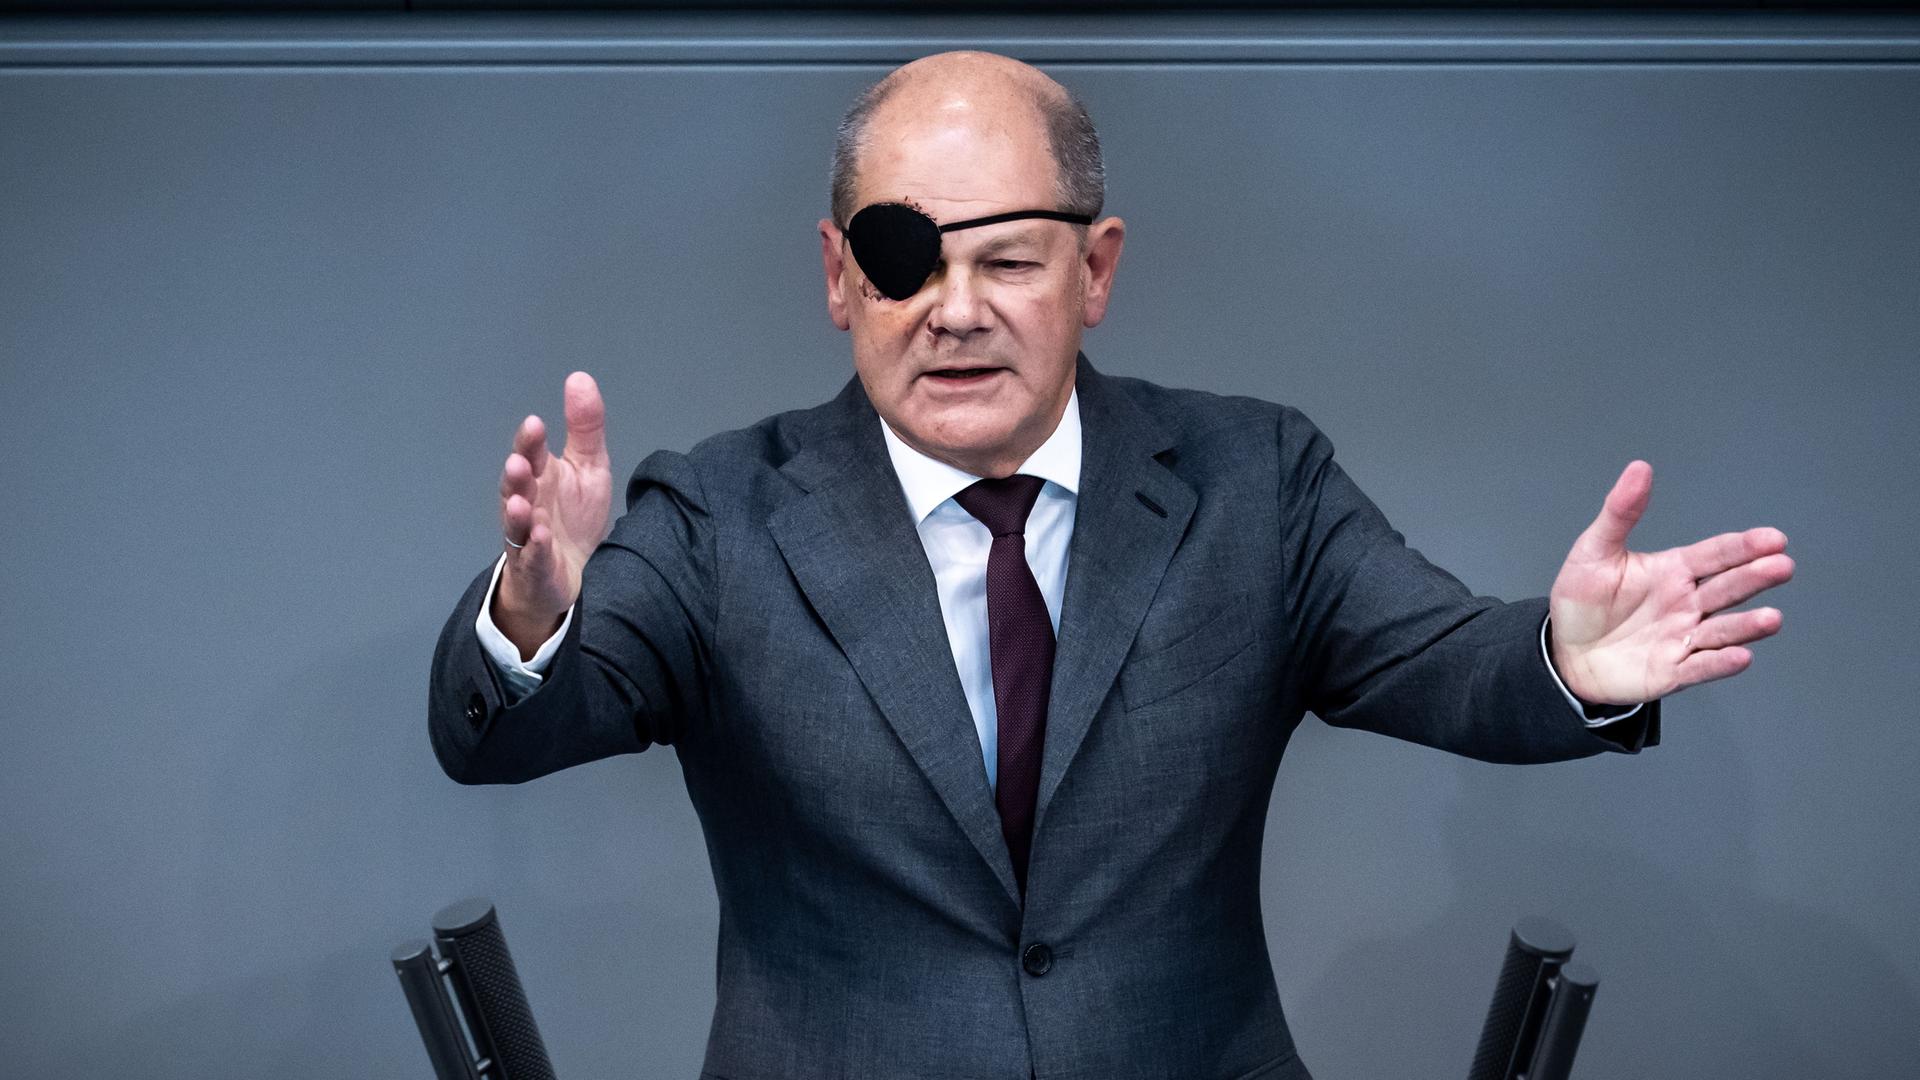 Bundes-Kanzler Olaf Scholz redet im Bundestag.Er trägt eine Augen-Klappe, weil er sich bei einem Sturz im Gesicht verletzt hat.